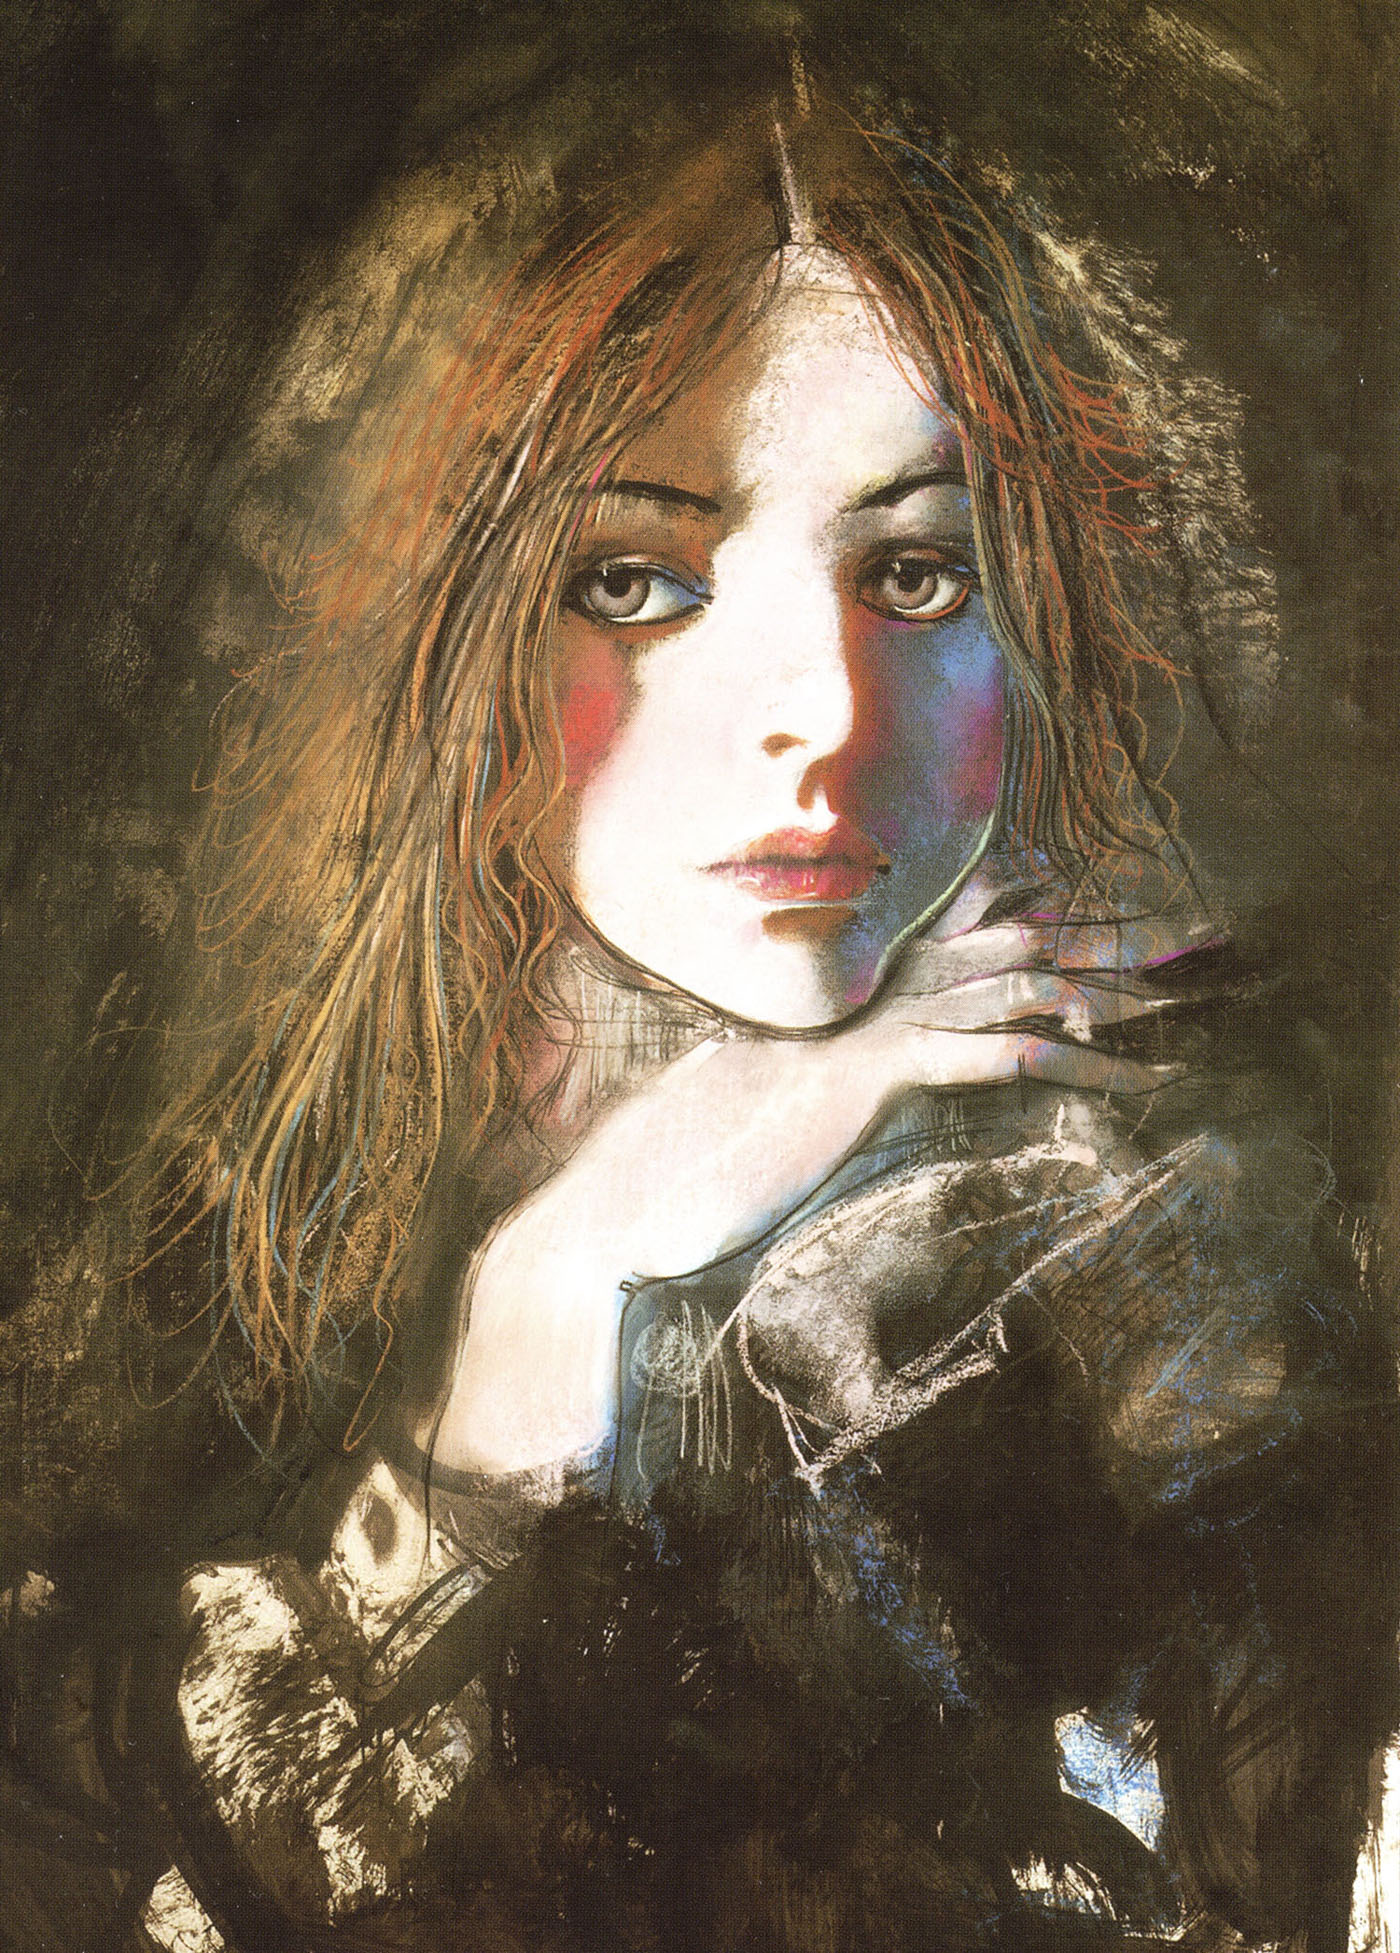 Клим Ли. В. набоков "Лолита". Иллюстрация. 2004.